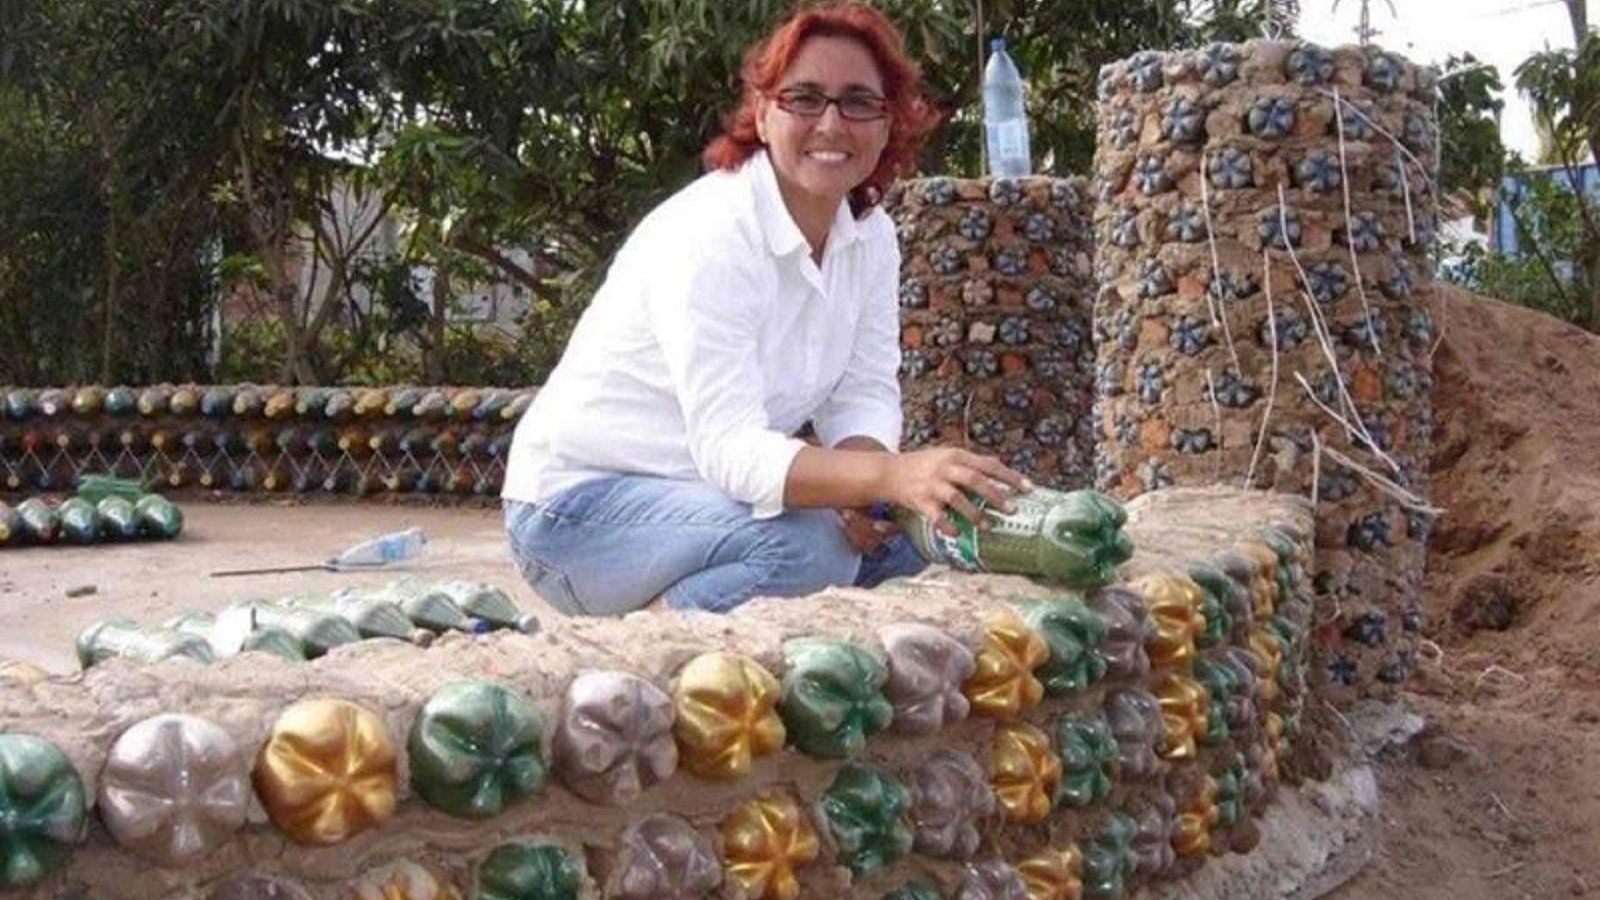 Cette avocate de Bolivie construit des maisons en bouteilles pour les familles démunies